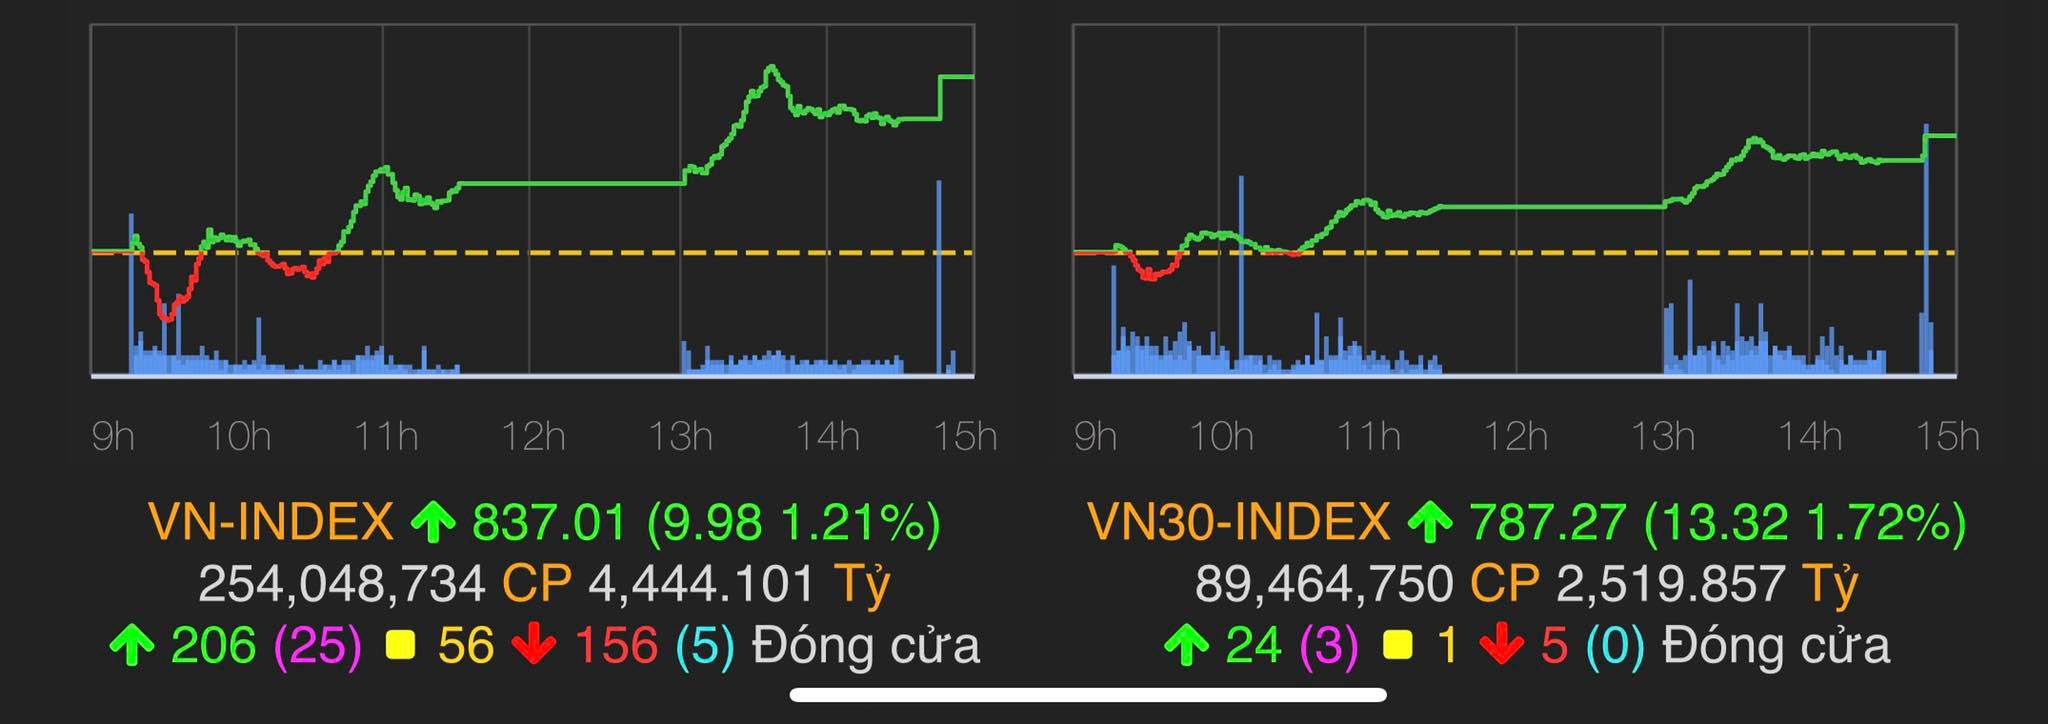 VN-Index tăng 9,98 điểm (1,21%) lên 837,01 điểm